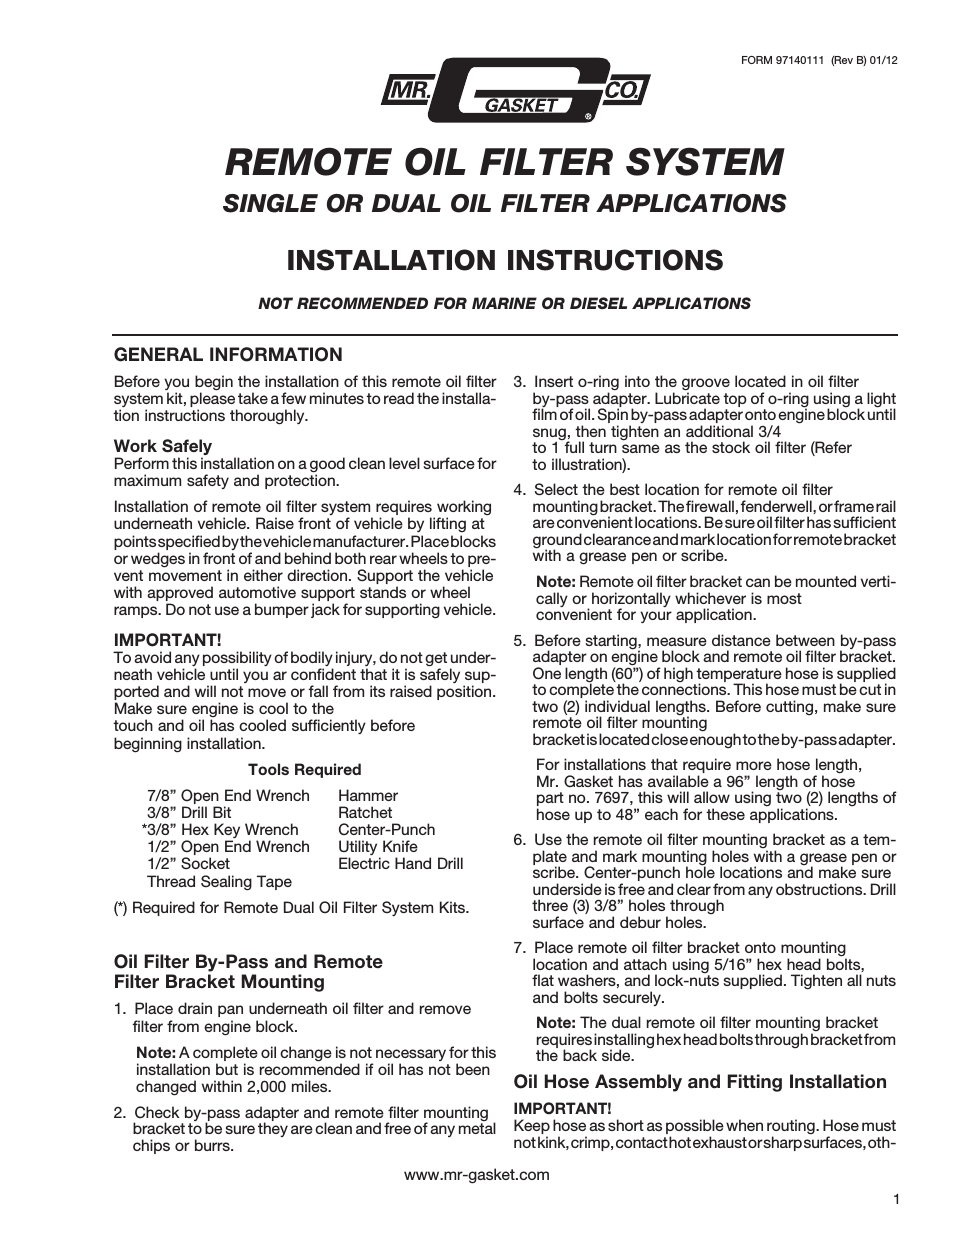 Mr Gasket 7682 Remote Oil Filter System 